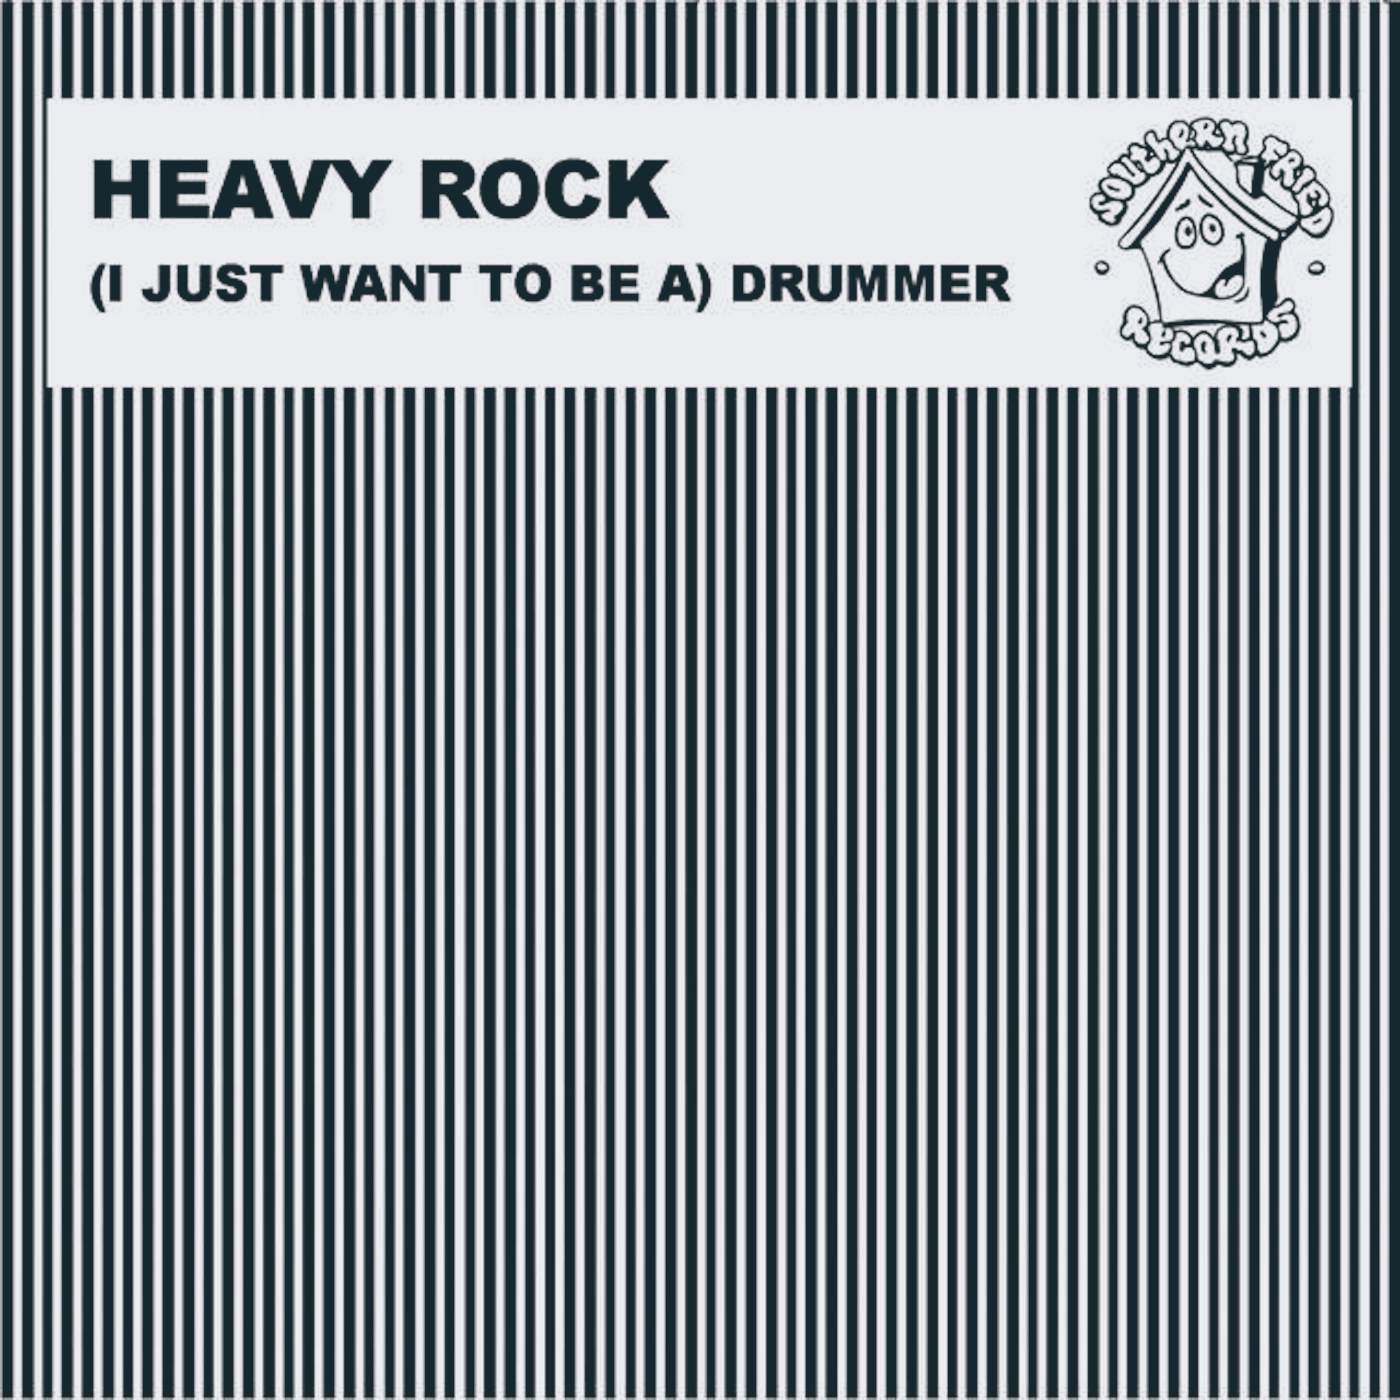 Heavy Rock